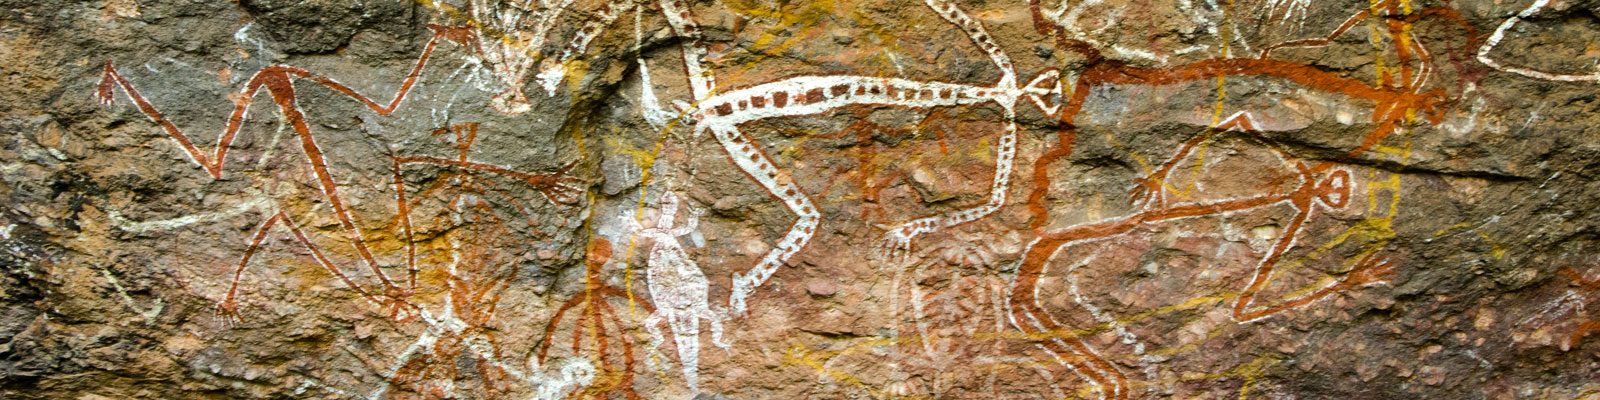 Aboriginal Australia